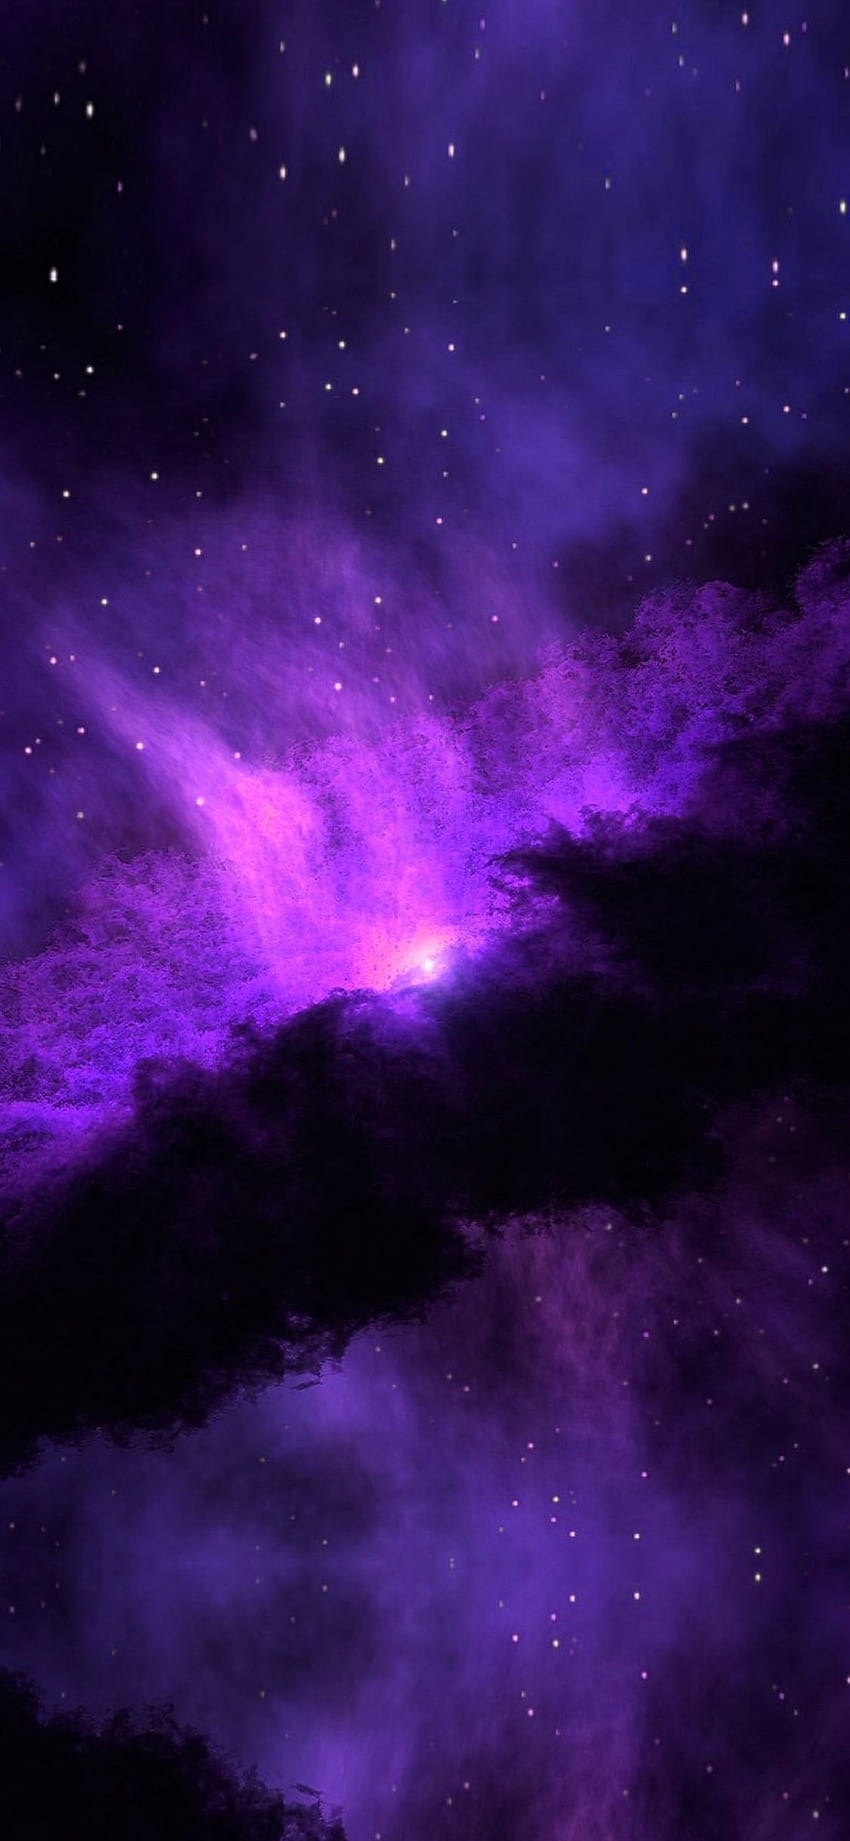 iPhone X . bintang nebula biru ungu luar angkasa mengagumkan, Biru dan ungu wallpaper ponsel HD